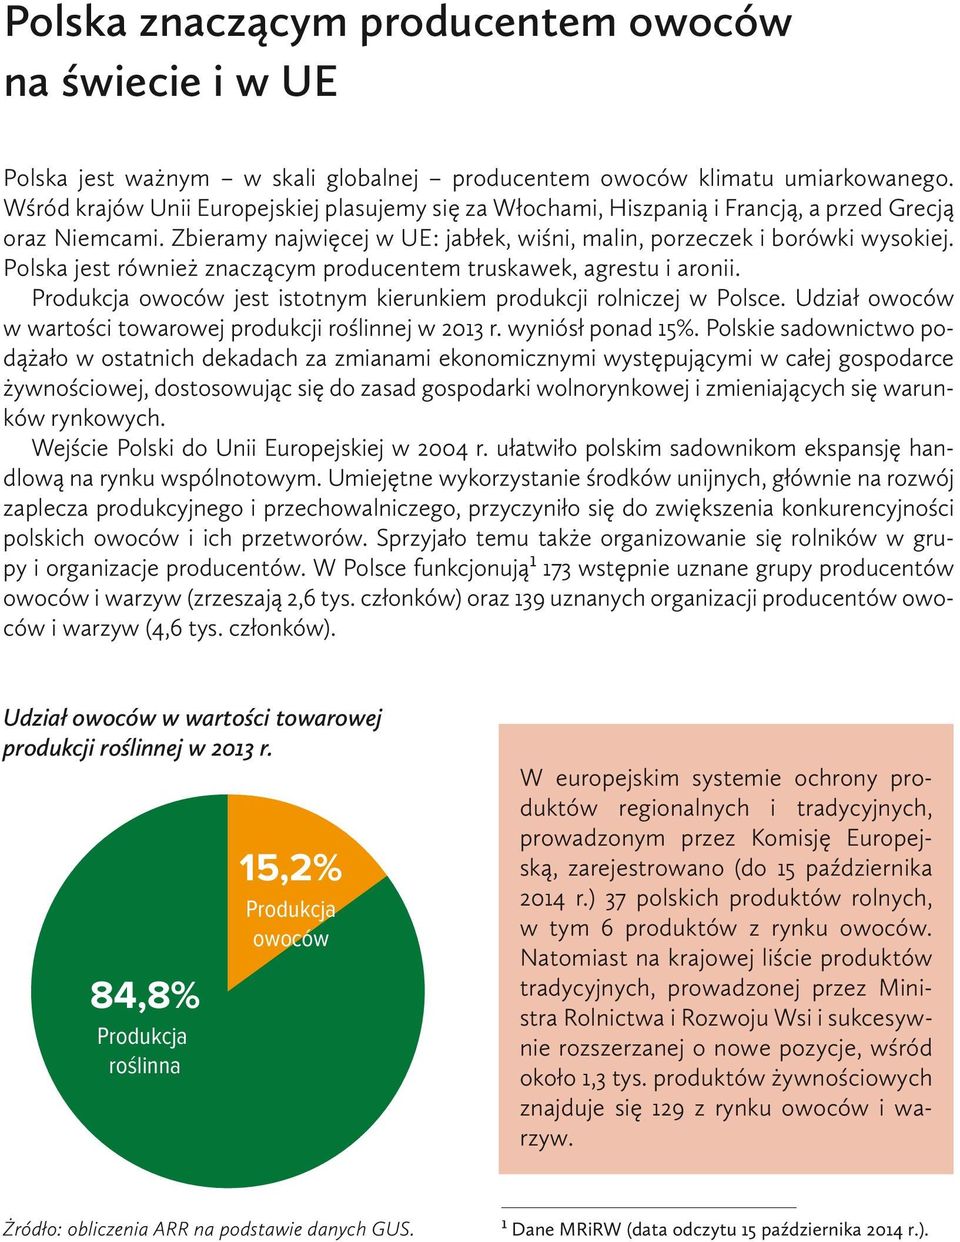 Polska jest również znaczącym producentem truskawek, agrestu i aronii. Produkcja owoców jest istotnym kierunkiem produkcji rolniczej w Polsce.